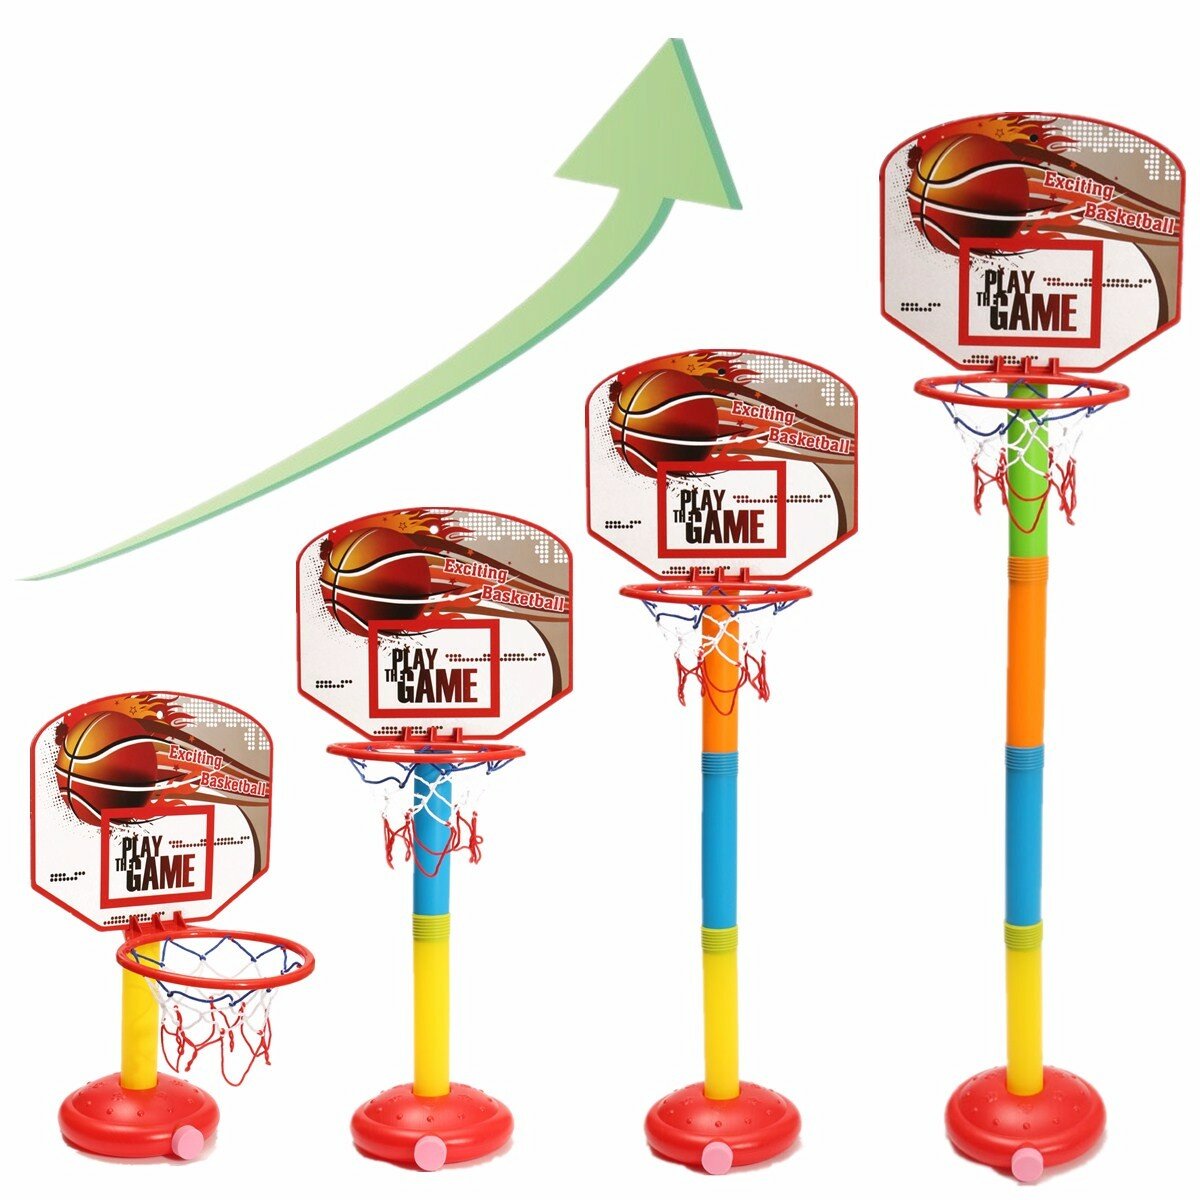 4-Gears Height الأطفال في الهواء الطلق / داخلي كرة سلة قابلة للرفع مع مجموعة كرة السلة + مضخة المنزل سليمالجسم لعب الاطف